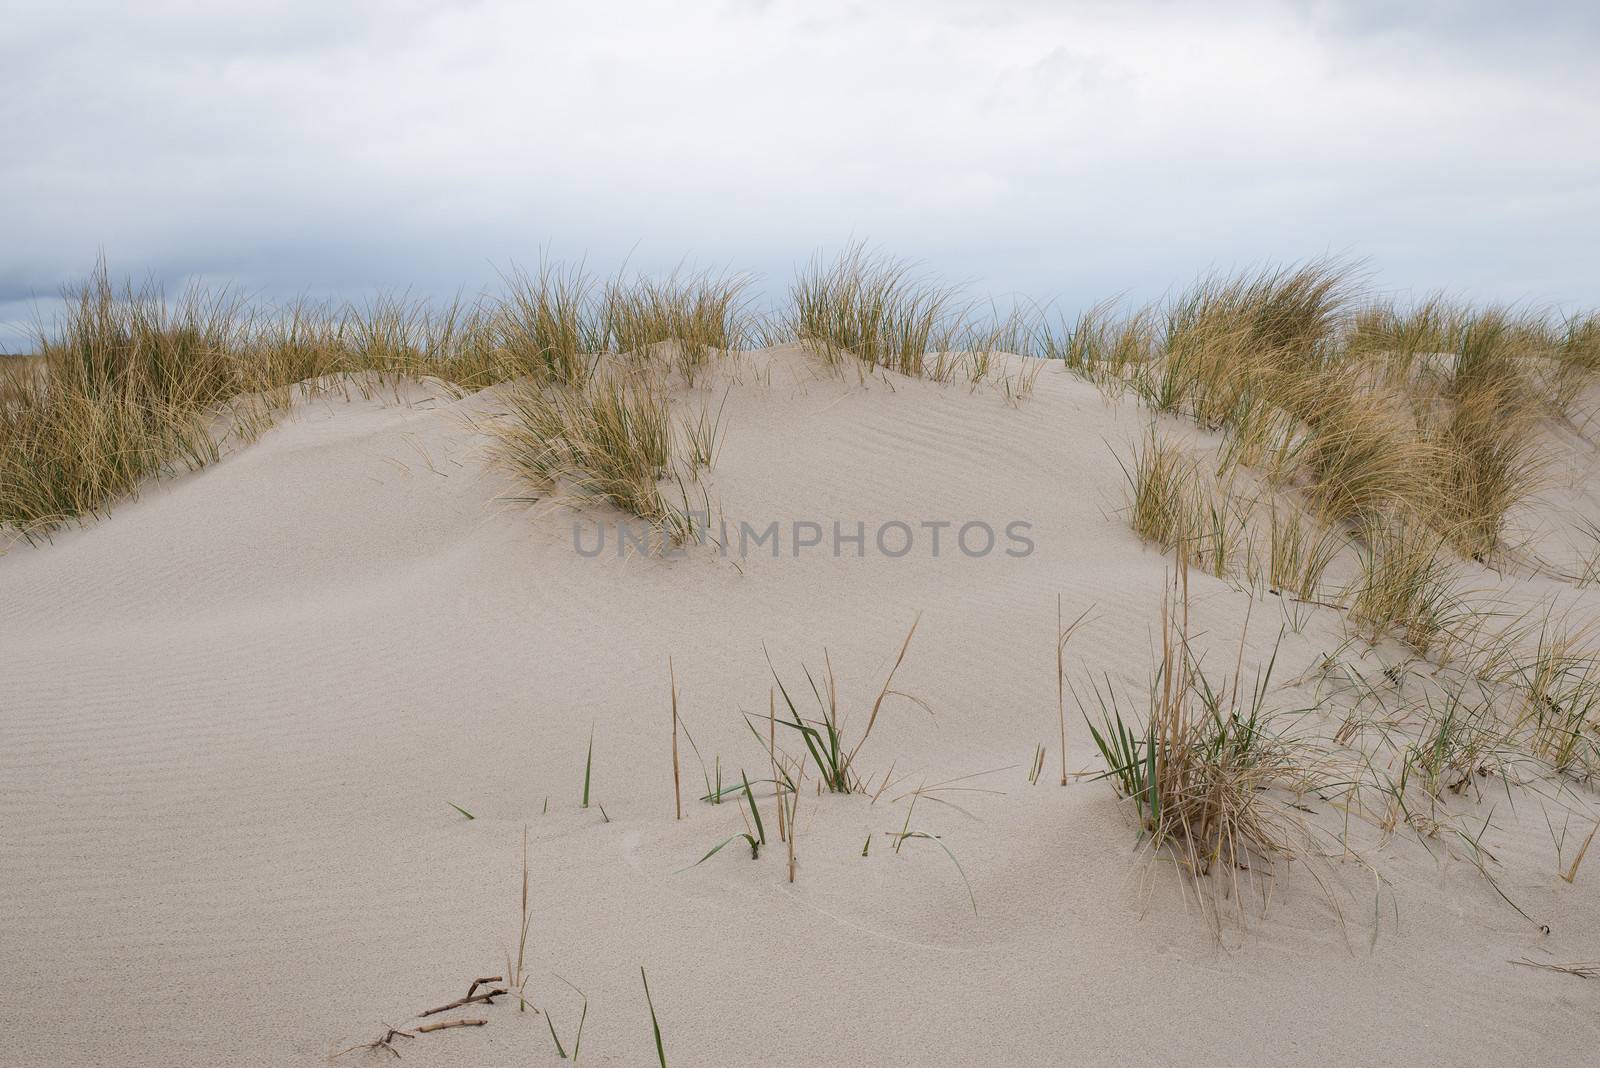 Sand dunes with beachgrass by Arrxxx